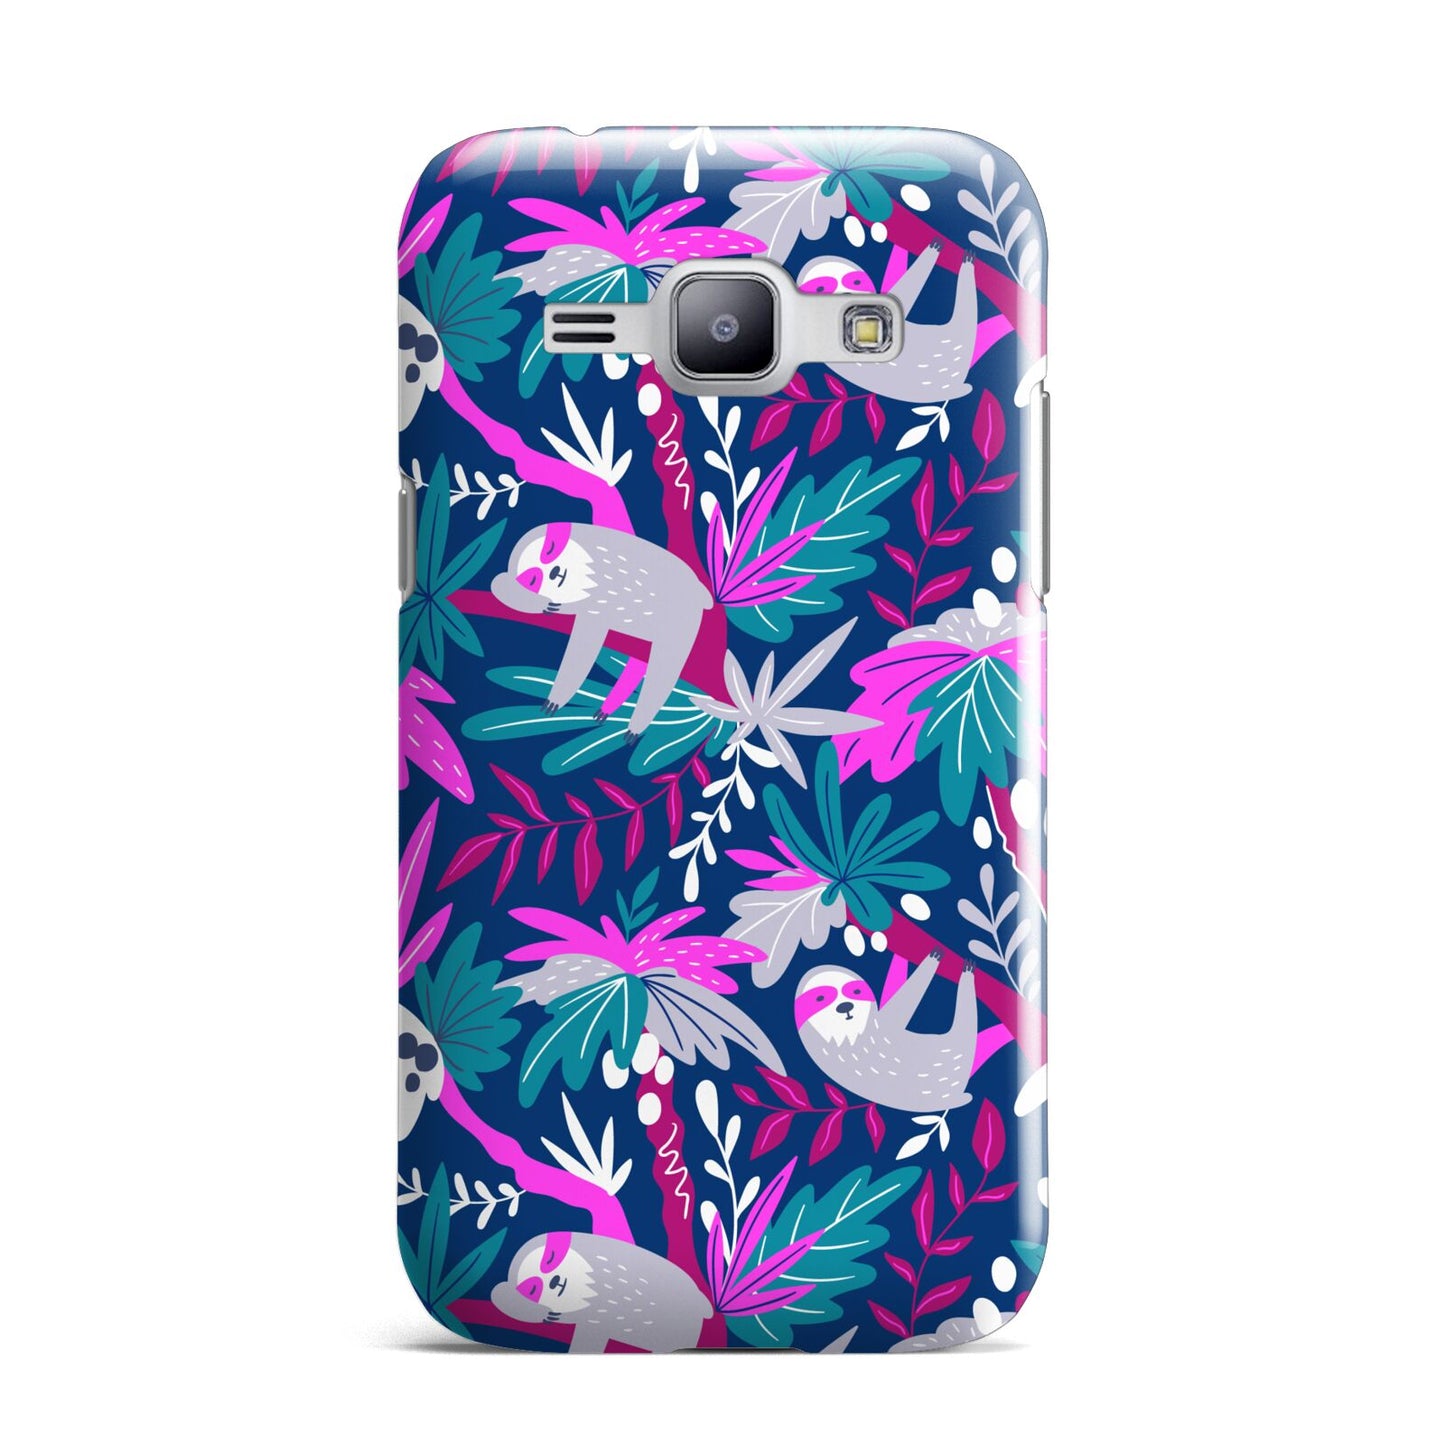 Sloth Samsung Galaxy J1 2015 Case